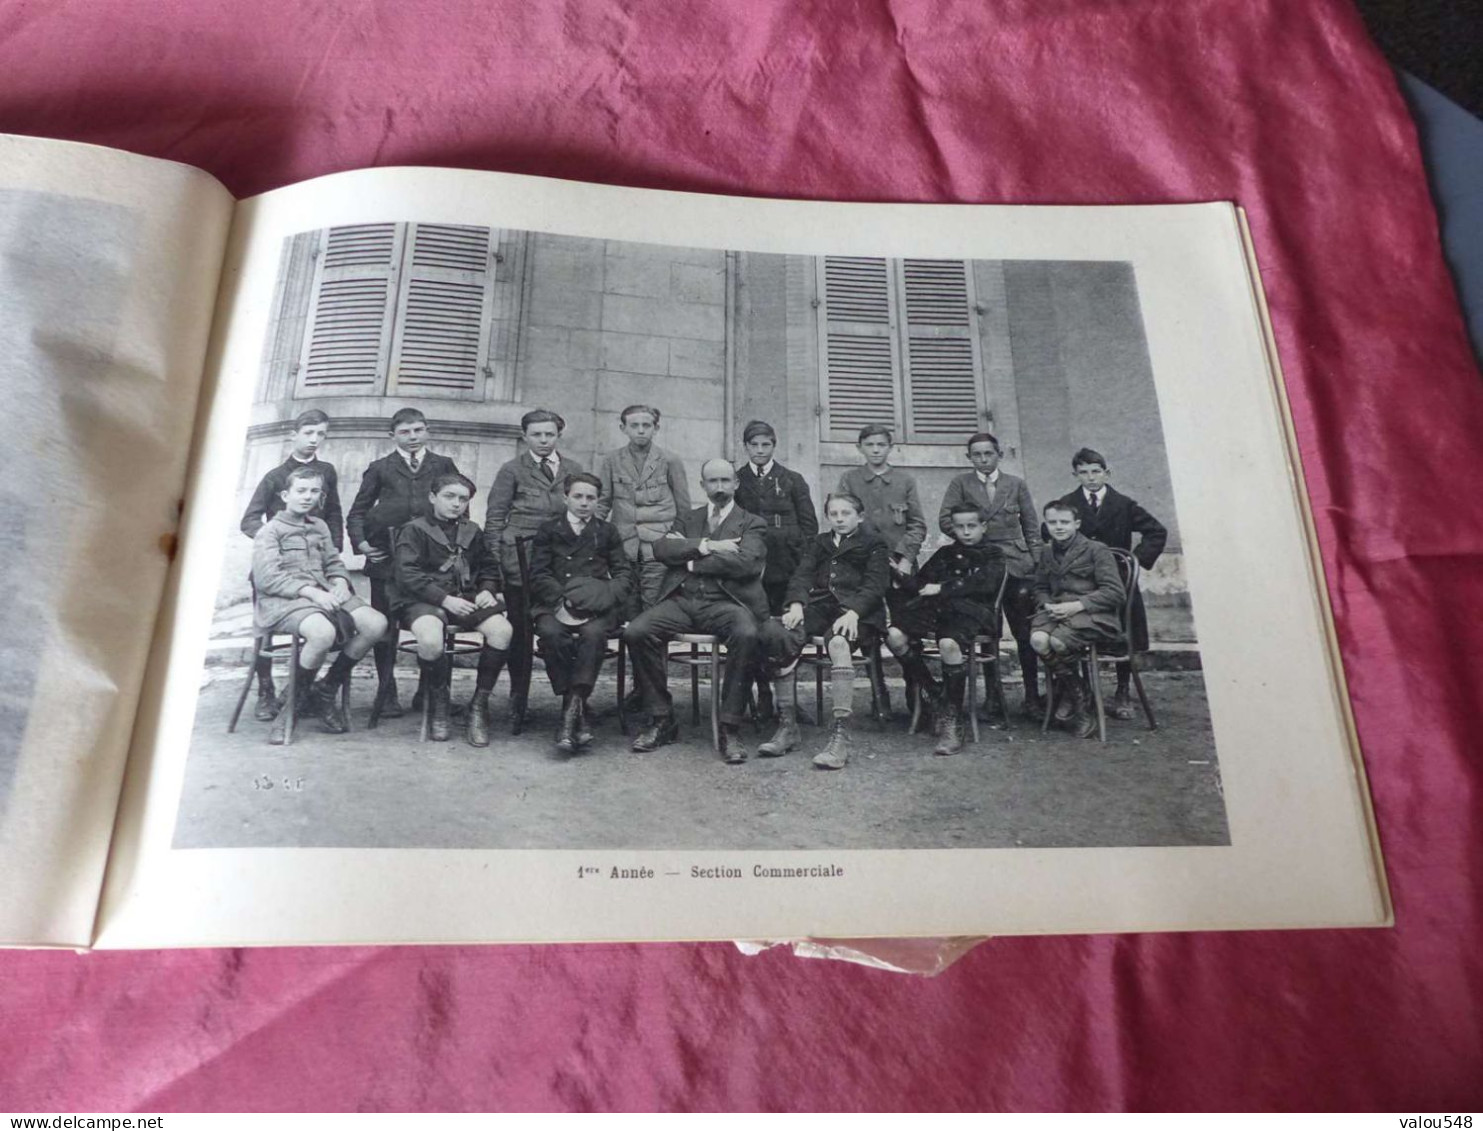 VP-11 , Joli document illustré , Ecole Primaire Supérieure et Professionnelle de Bourges 1922